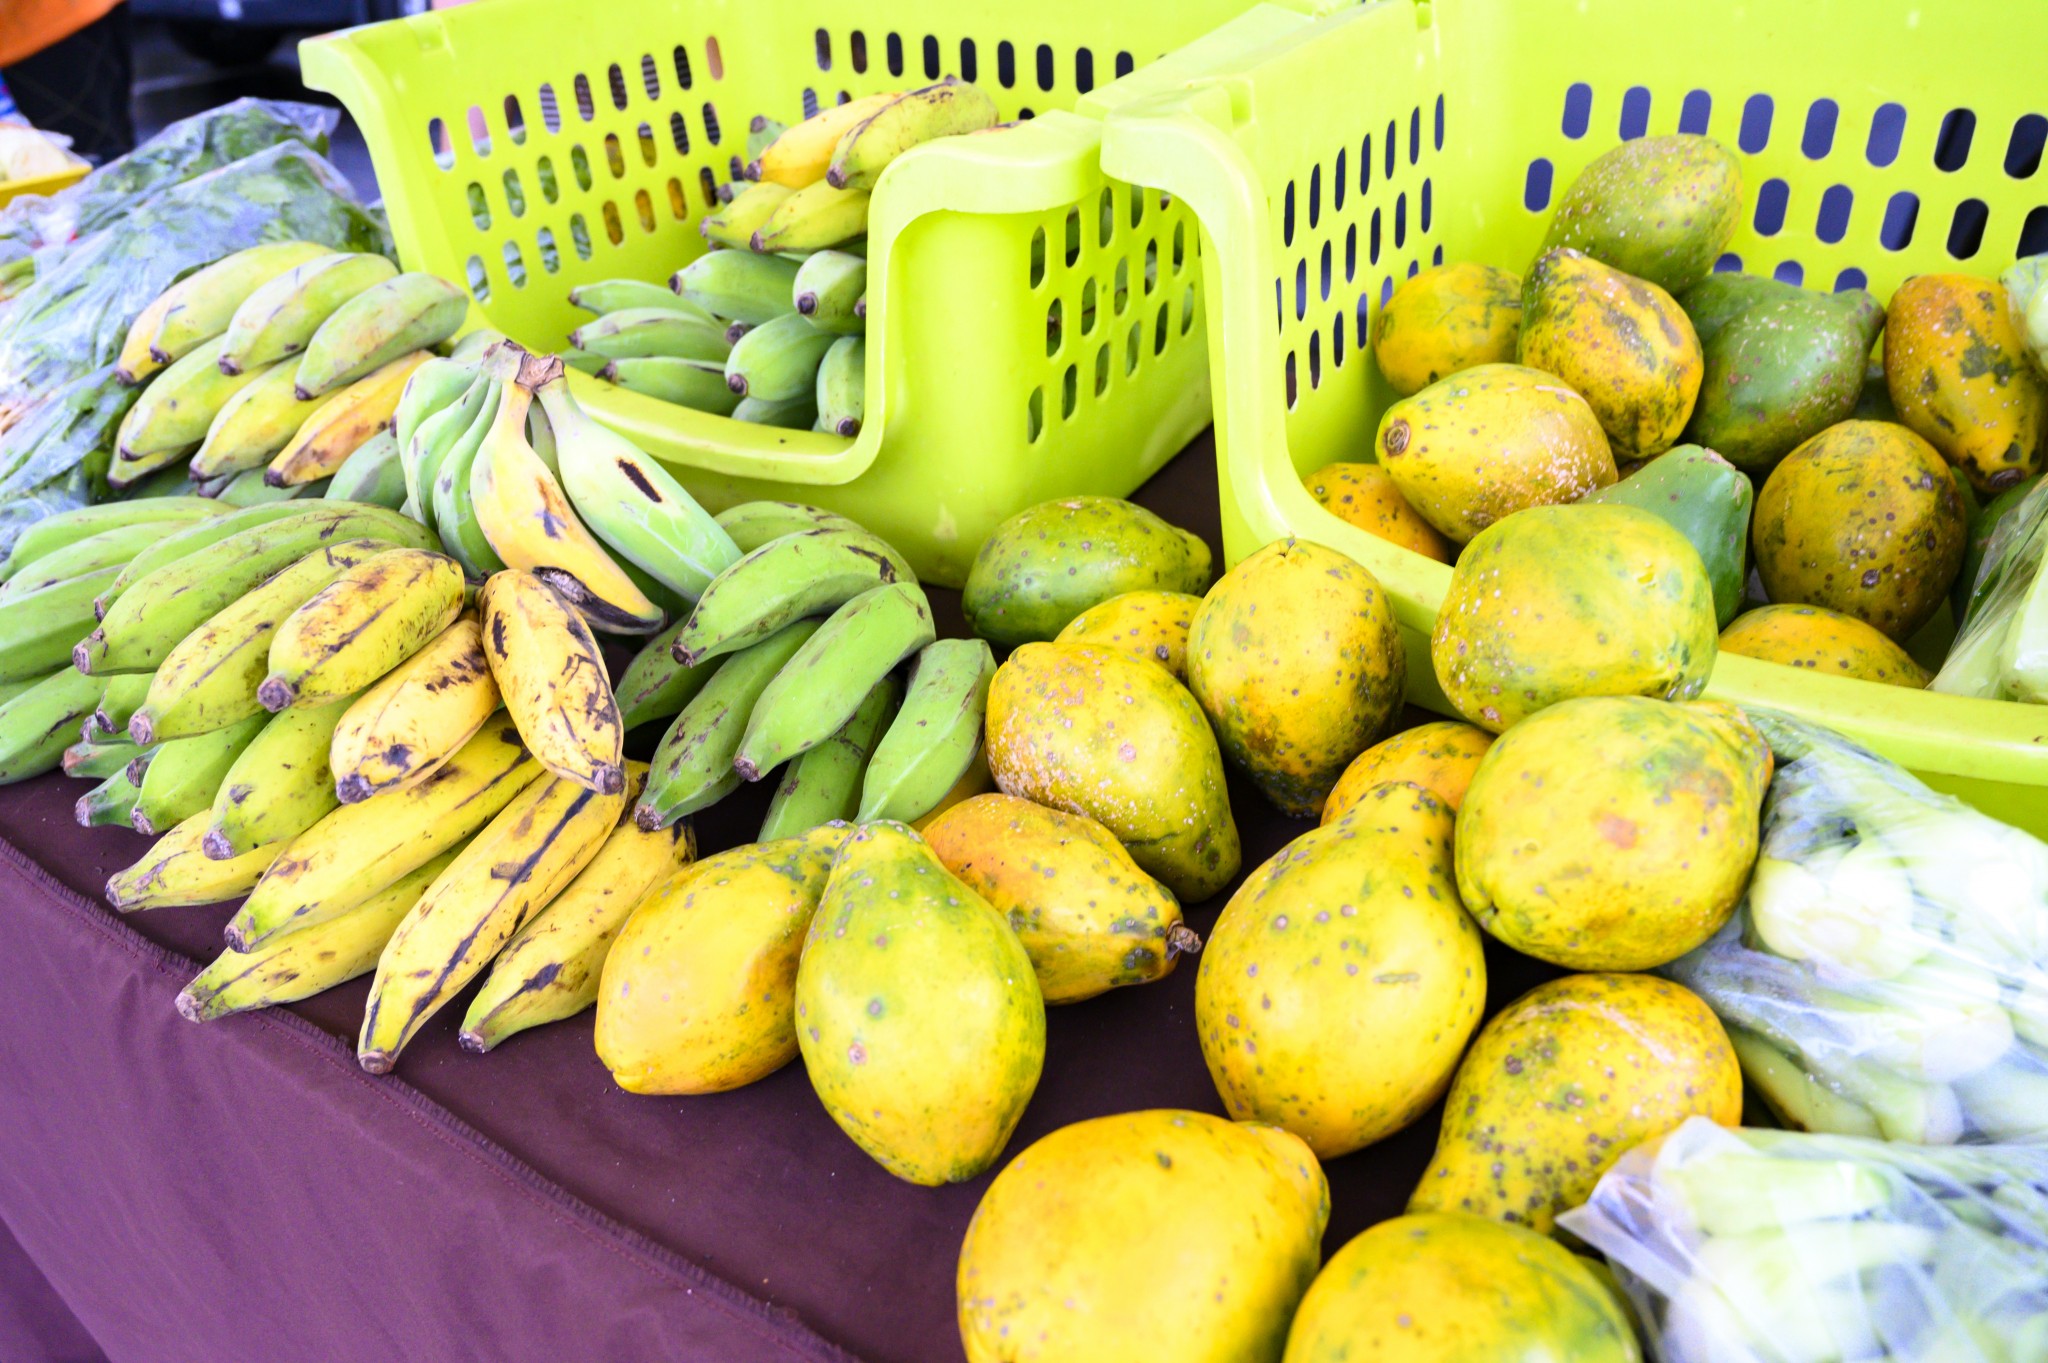 農家直送だから野菜や果物は新鮮そのもの。ハワイならではのトロピカルフルーツも店頭に並び、生産者との会話を楽しみながらじっくり食材選びができる。